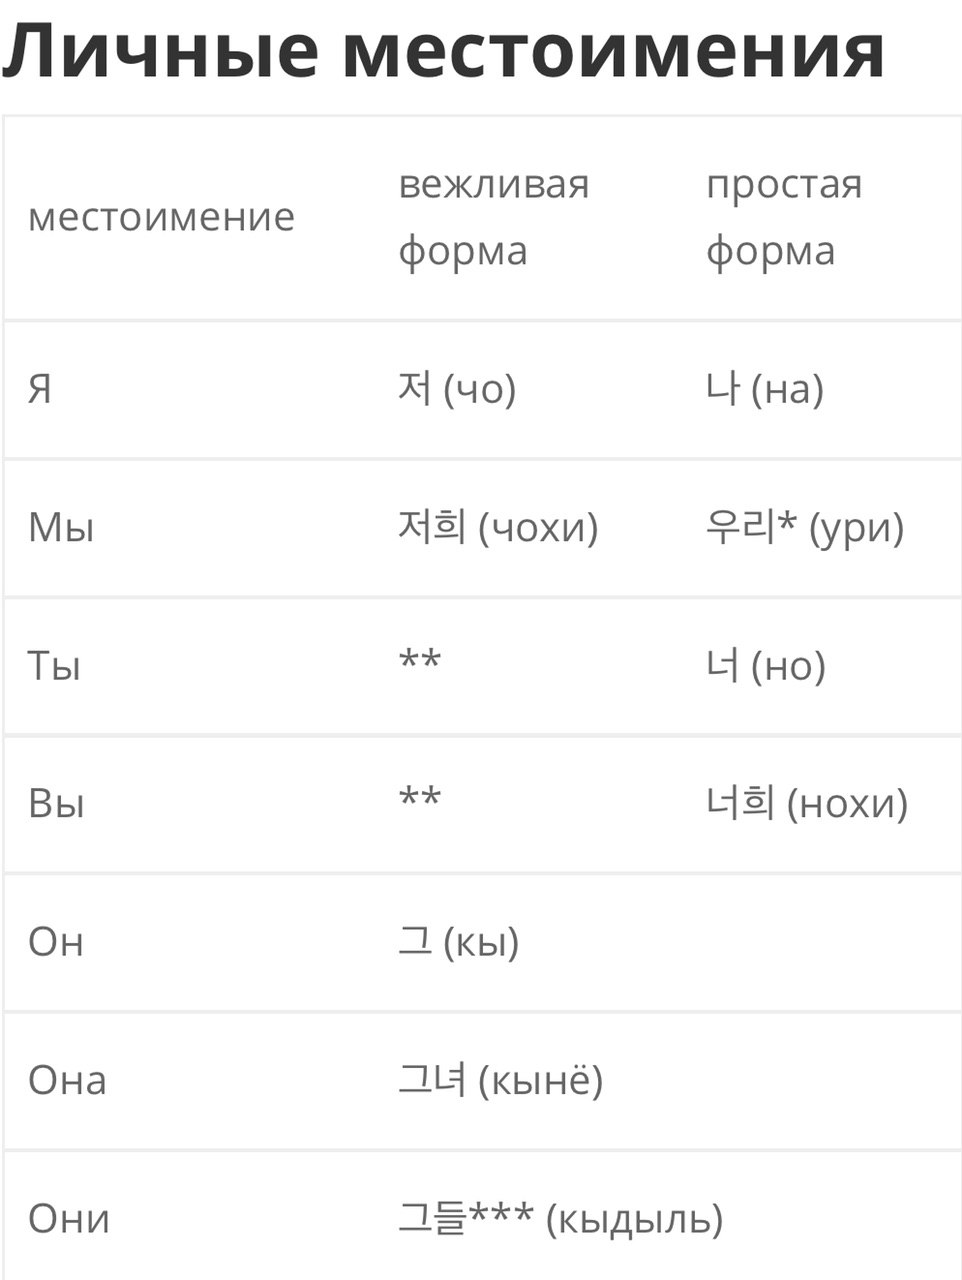 Перевод с корейского на русский по фото с телефона онлайн